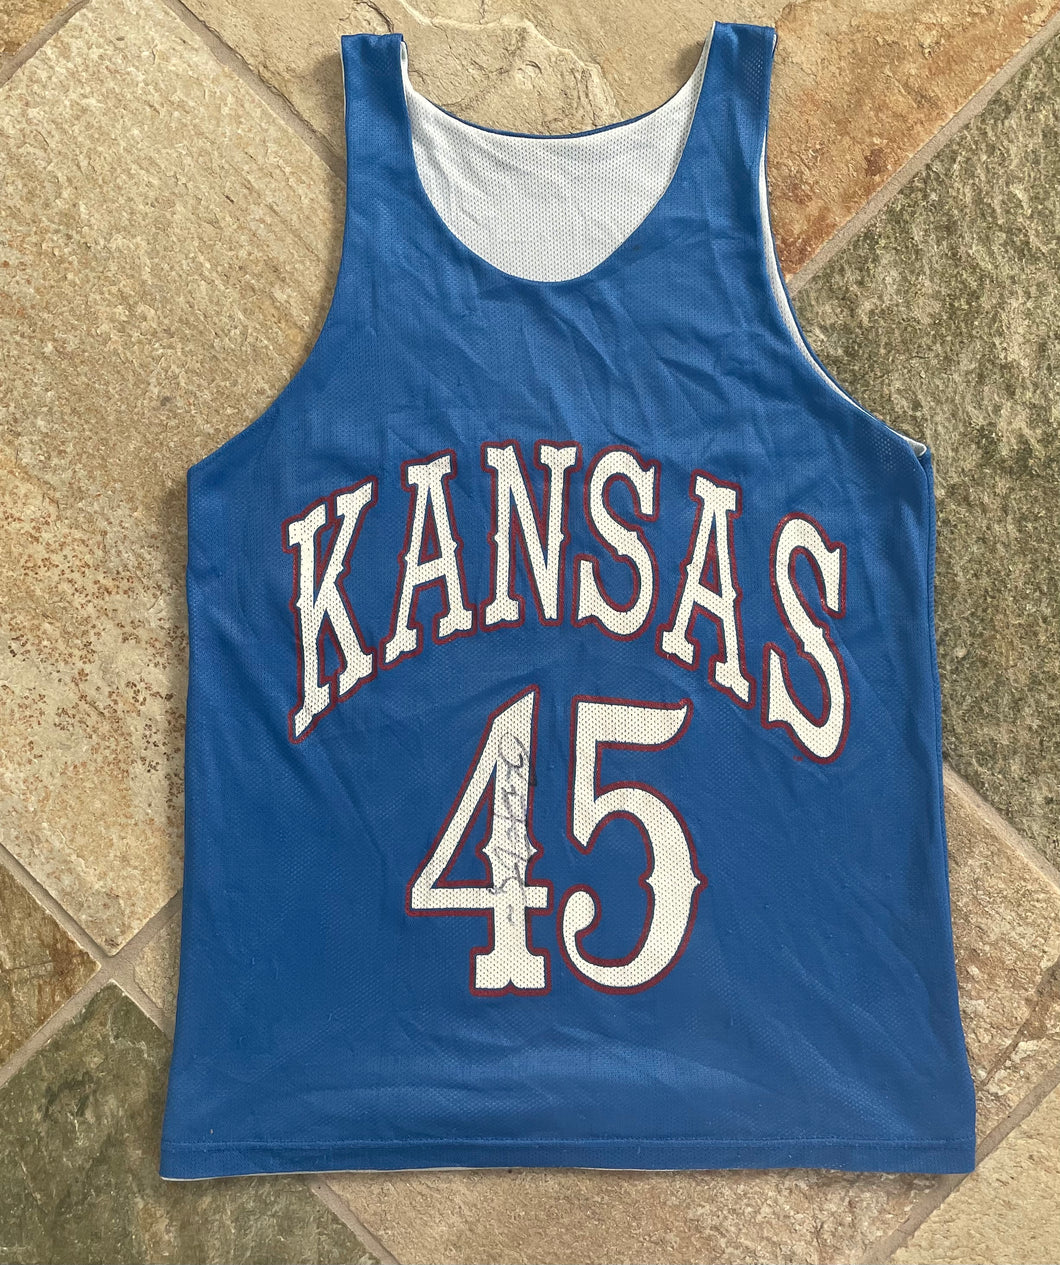 Vintage Kansas Jayhawks Raef LaFrentz Basketball Jersey, Size Youth Large, 10-12